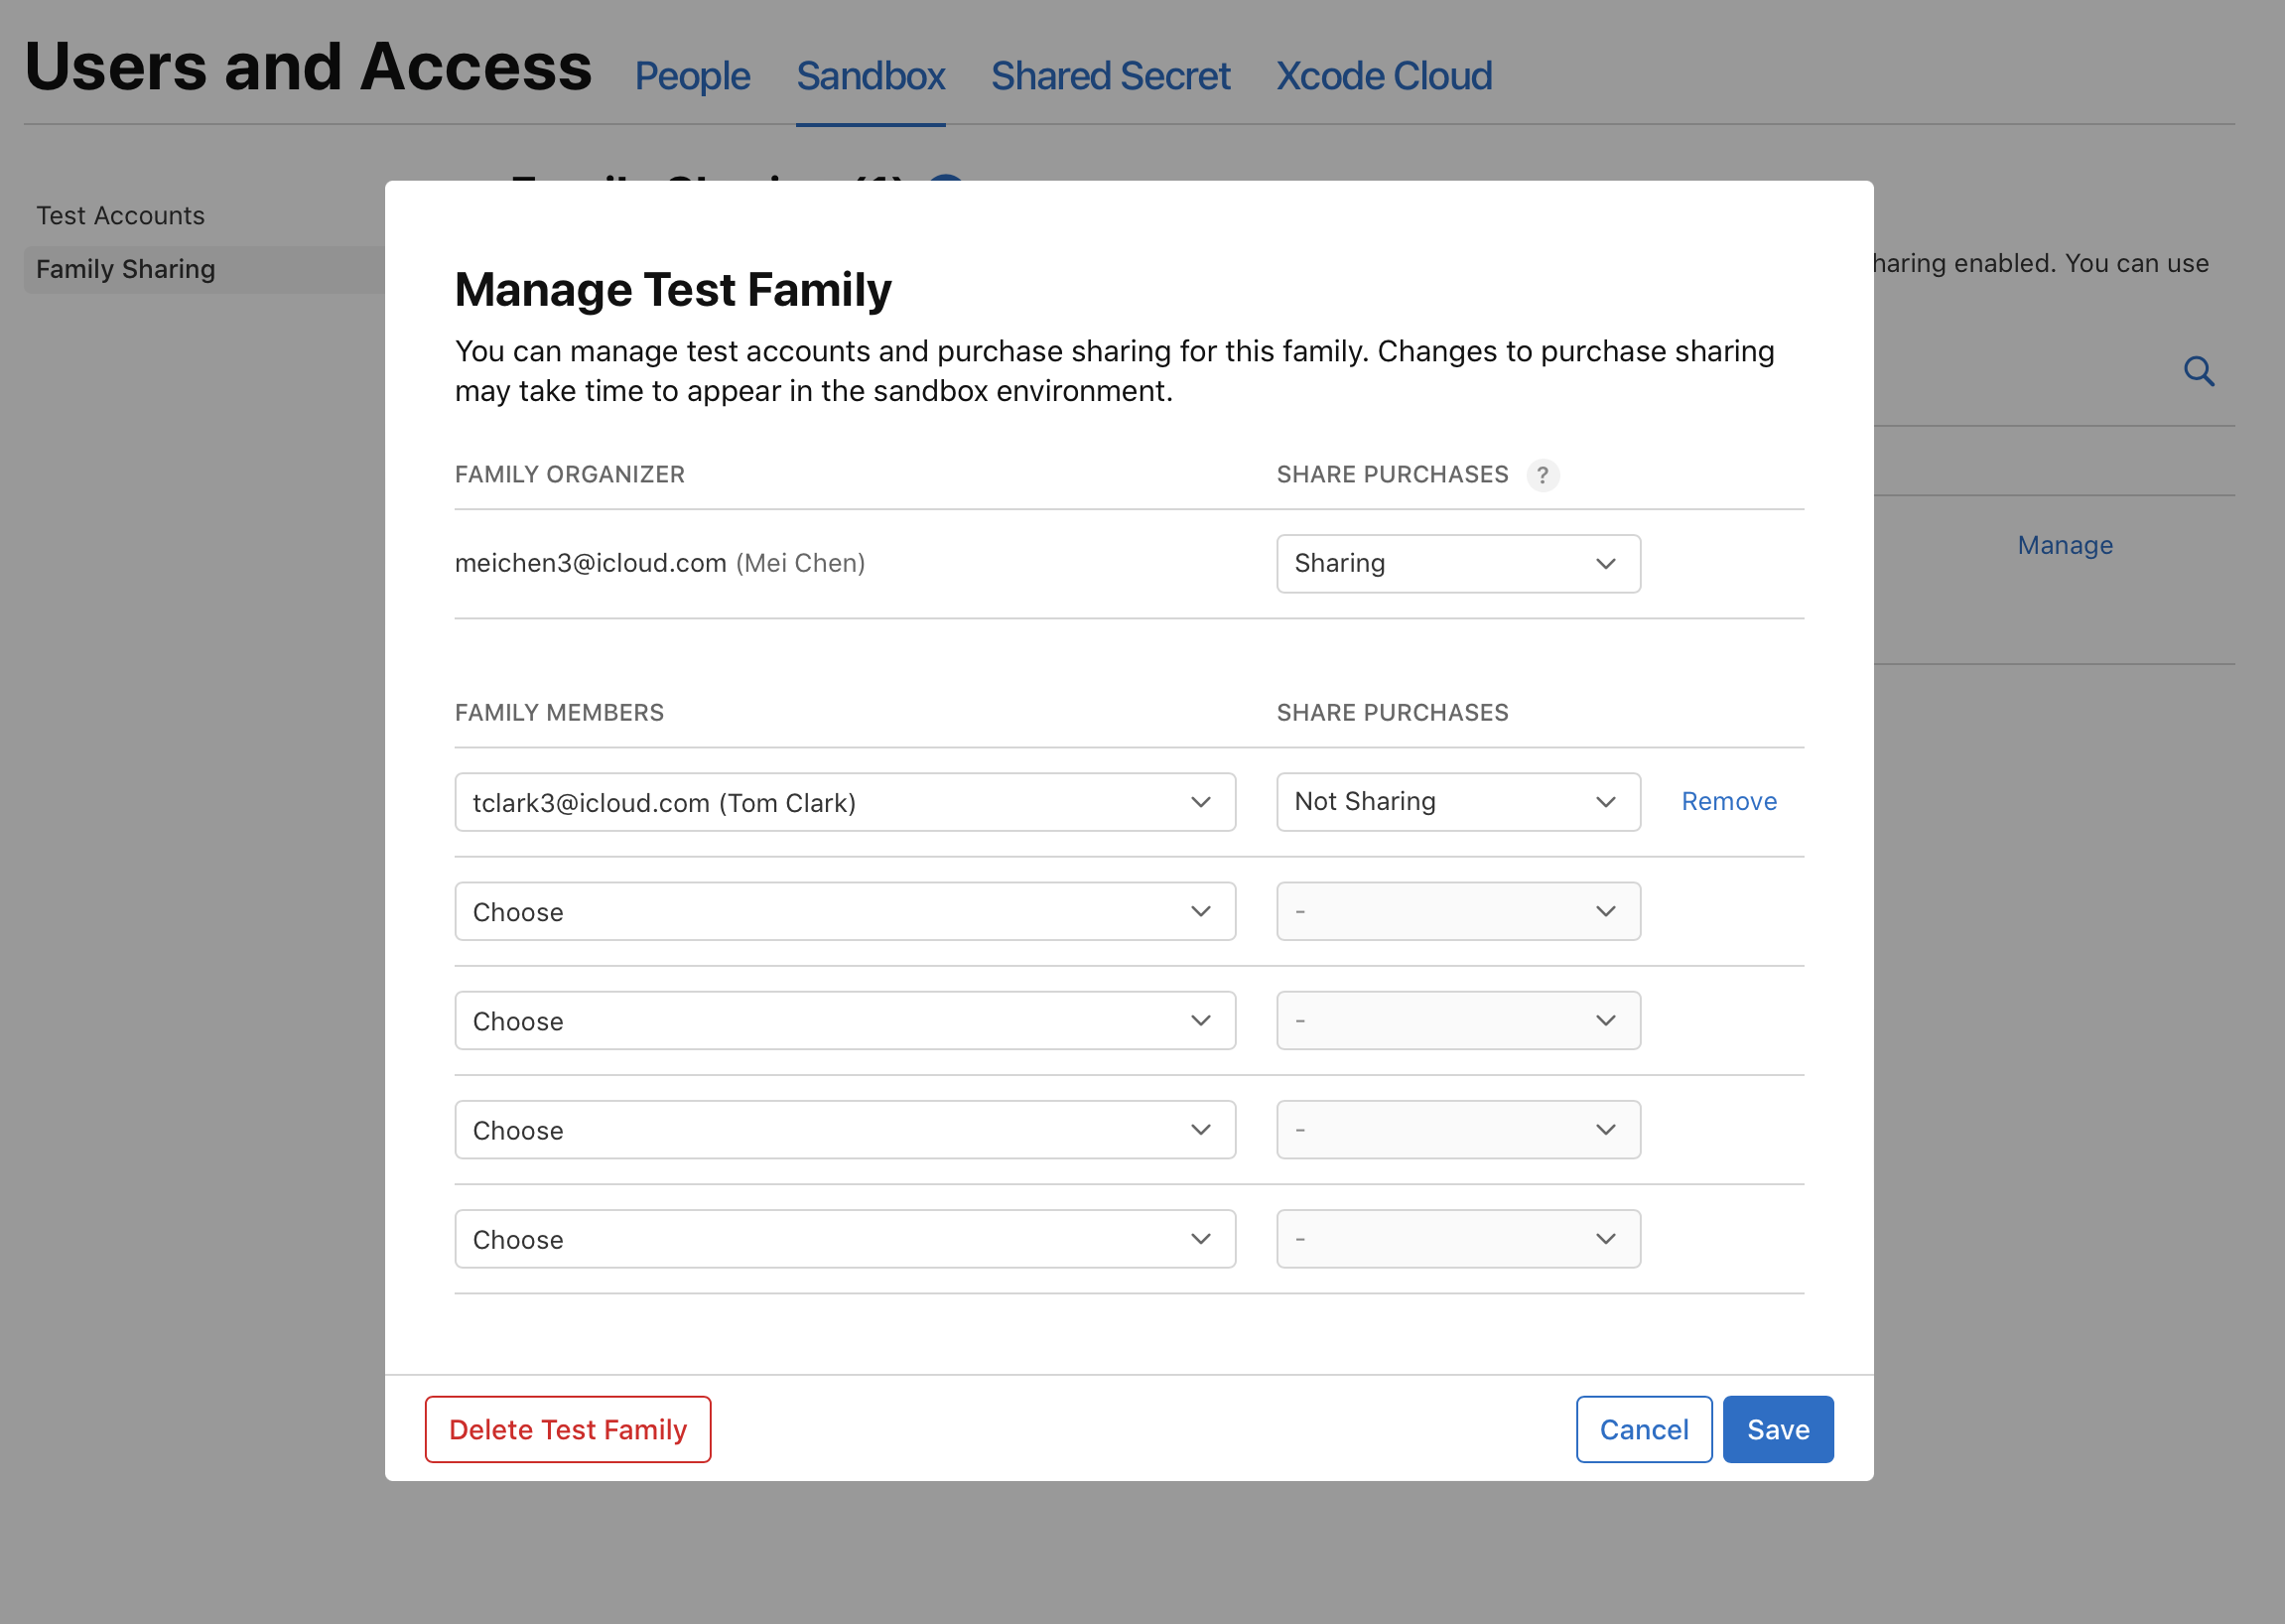 截屏为“家人共享”页面的“管理测试家庭”对话框，其中第一位成员旁边显示了“移除”按钮。